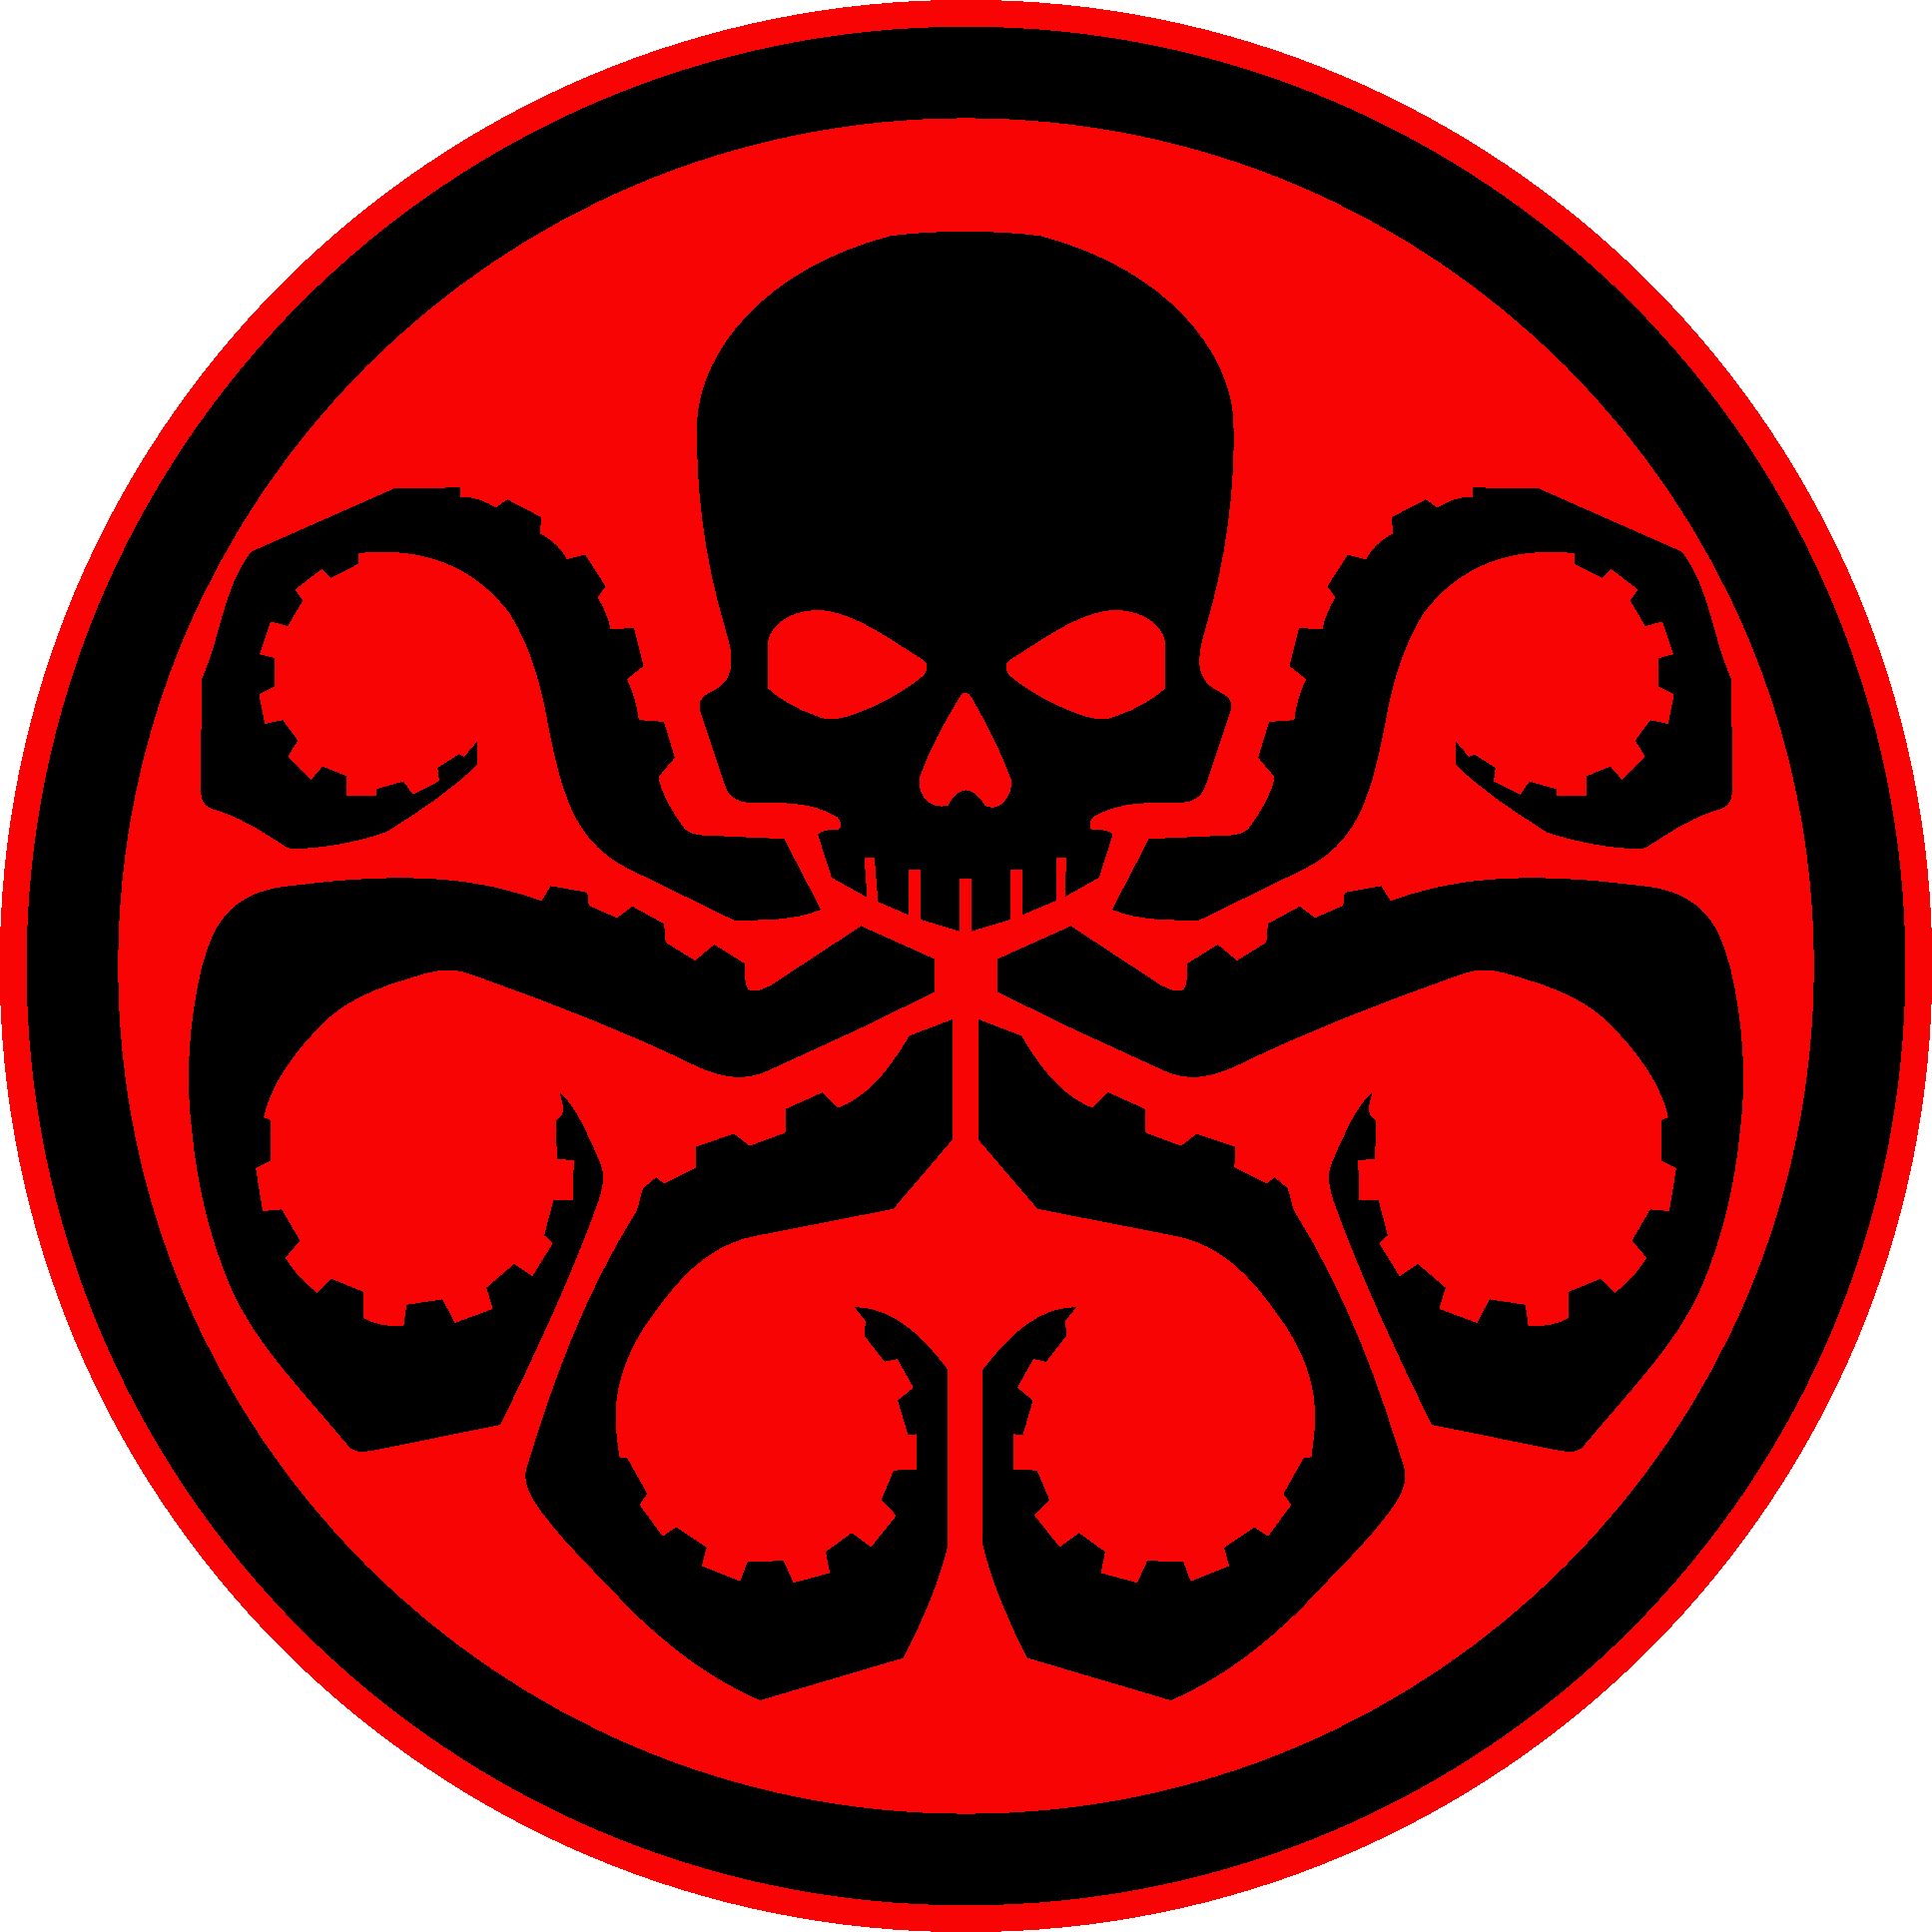 Hydra Logo - HYDRA | Marvel Cinematic Universe Wiki | FANDOM powered by Wikia